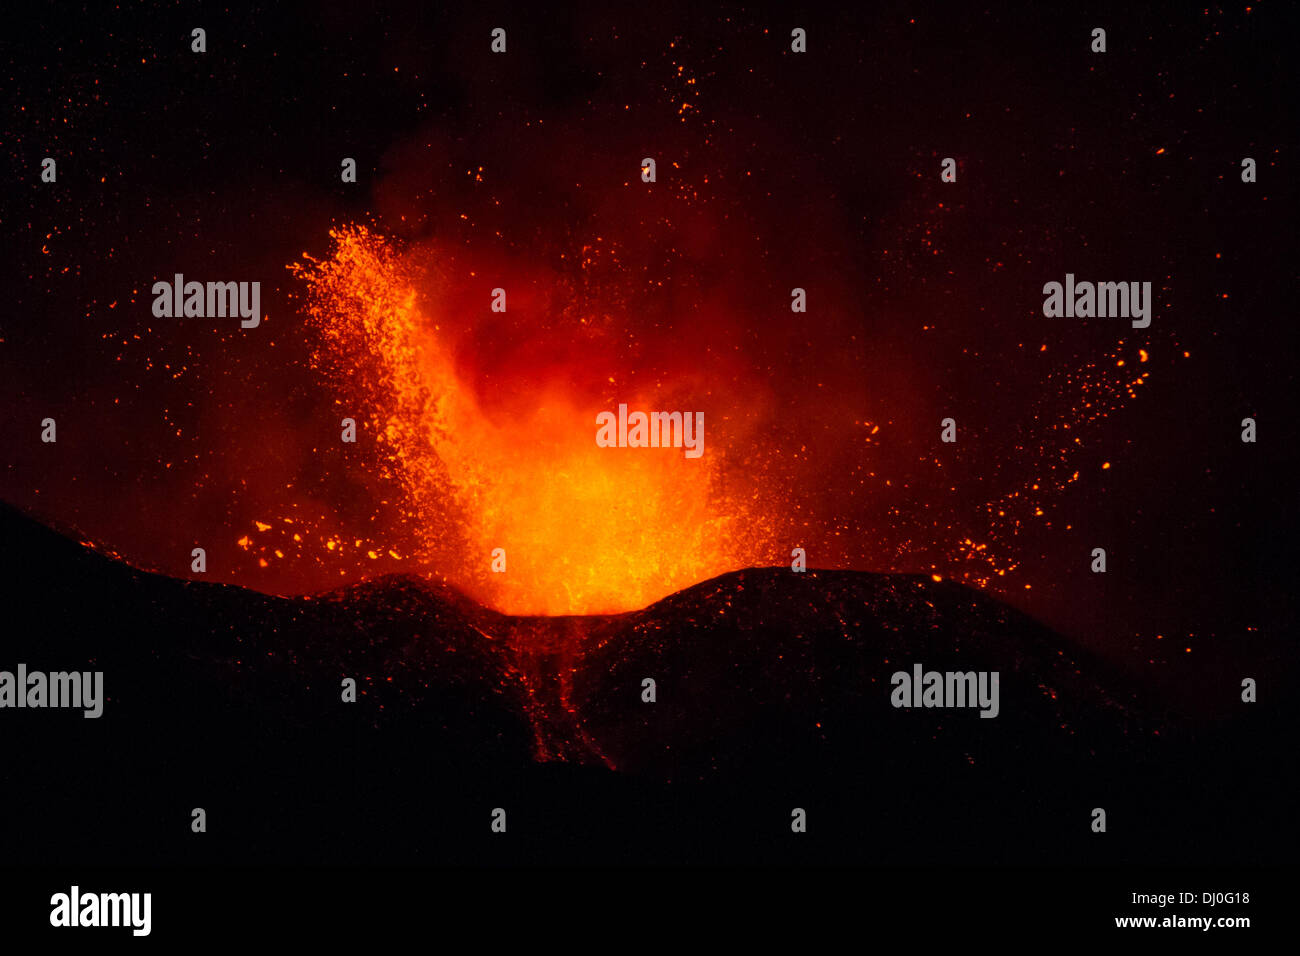 Magnifica eruzione del vulcano Etna. Colate di lava ed esplosioni tengono svegli tutti i siciliani. Credit: Wead/Alamy Live News Stock Photo